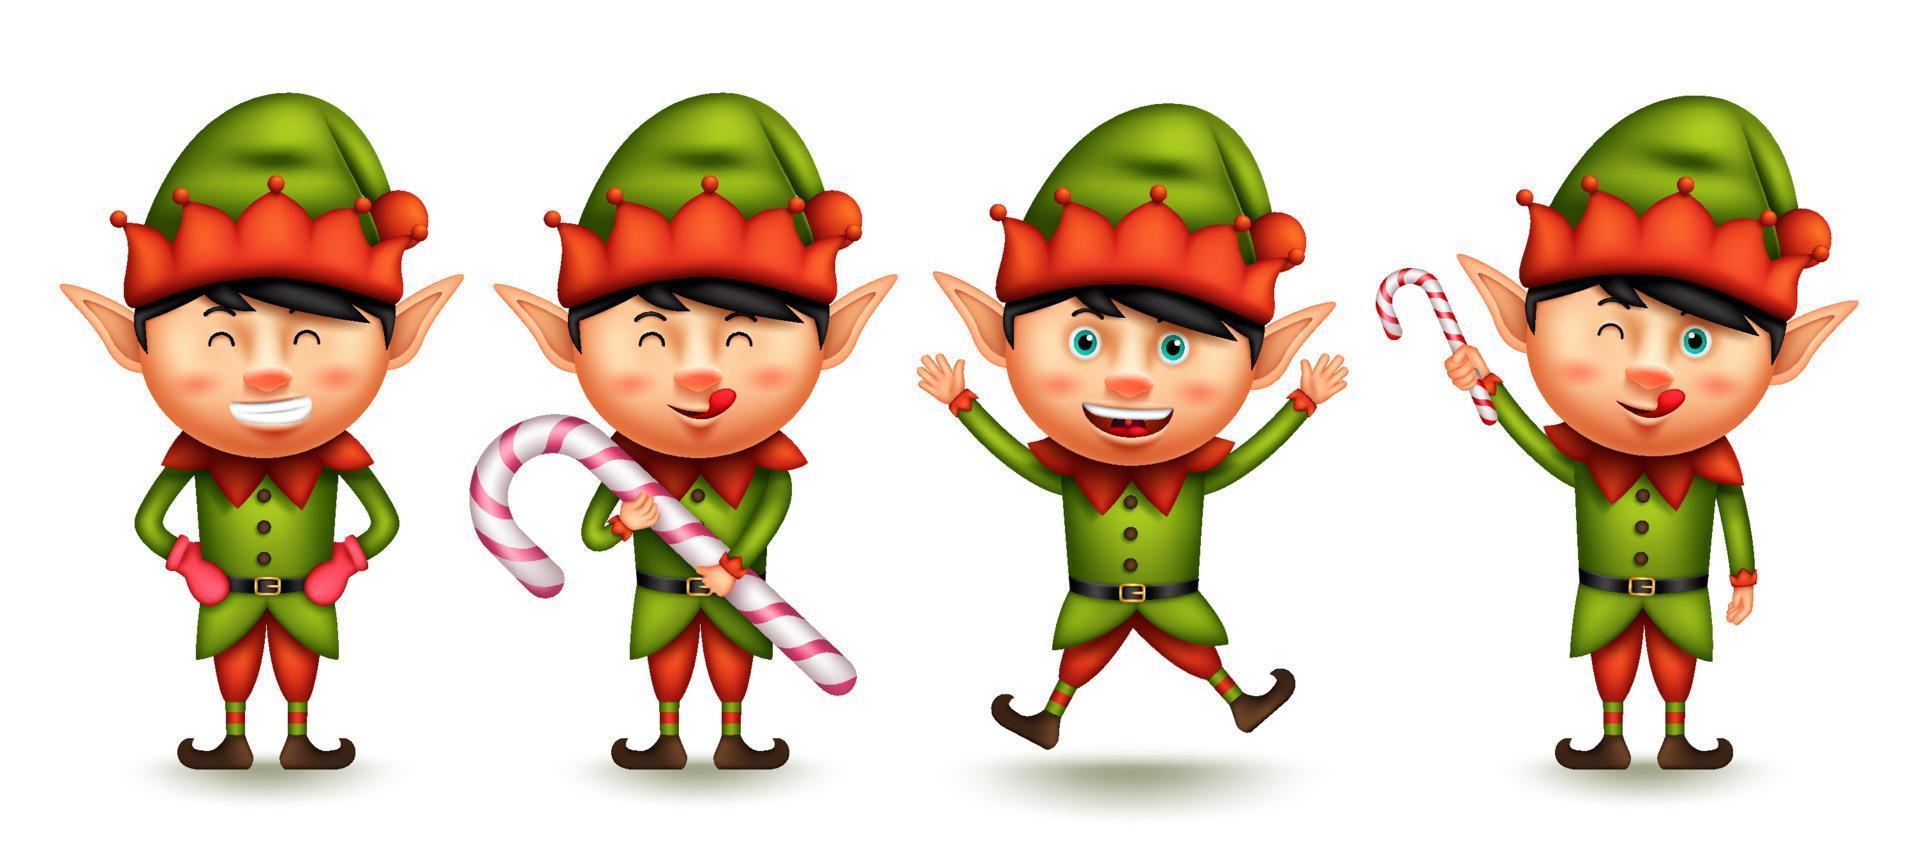 insieme di vettore del carattere di natale dell'elfo. ragazzino personaggi di elfi 3d con espressione sorridente nel saltare e tenere i gesti del bastoncino di zucchero per la collezione di design grafico di natale. illustrazione vettoriale.